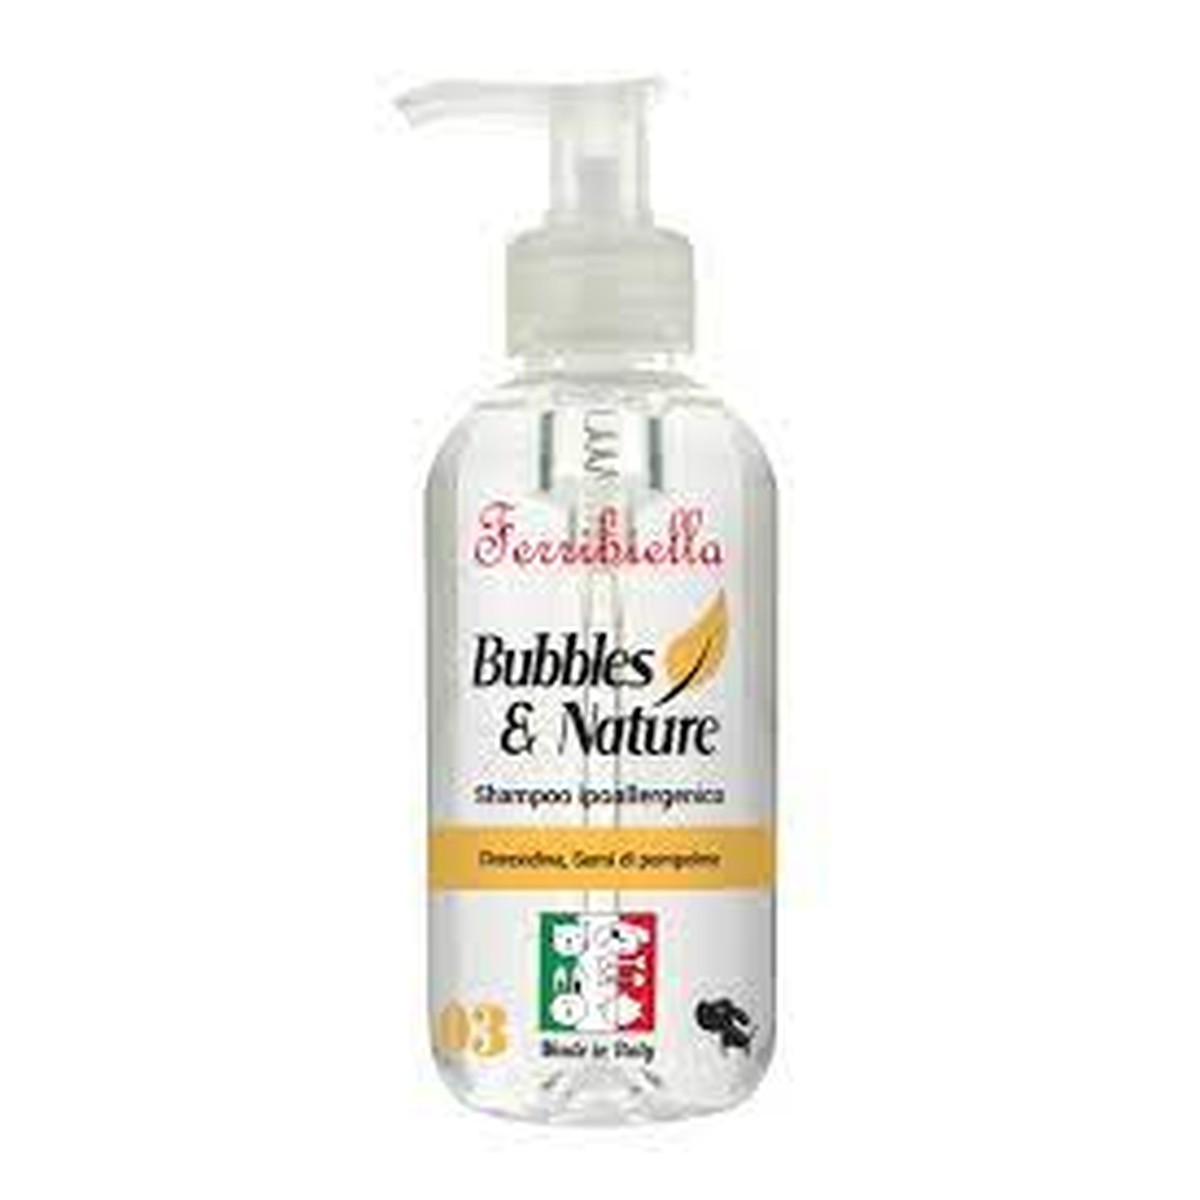 Ferribiella  Shampooing désinfectant Bubbles&nature  250ml